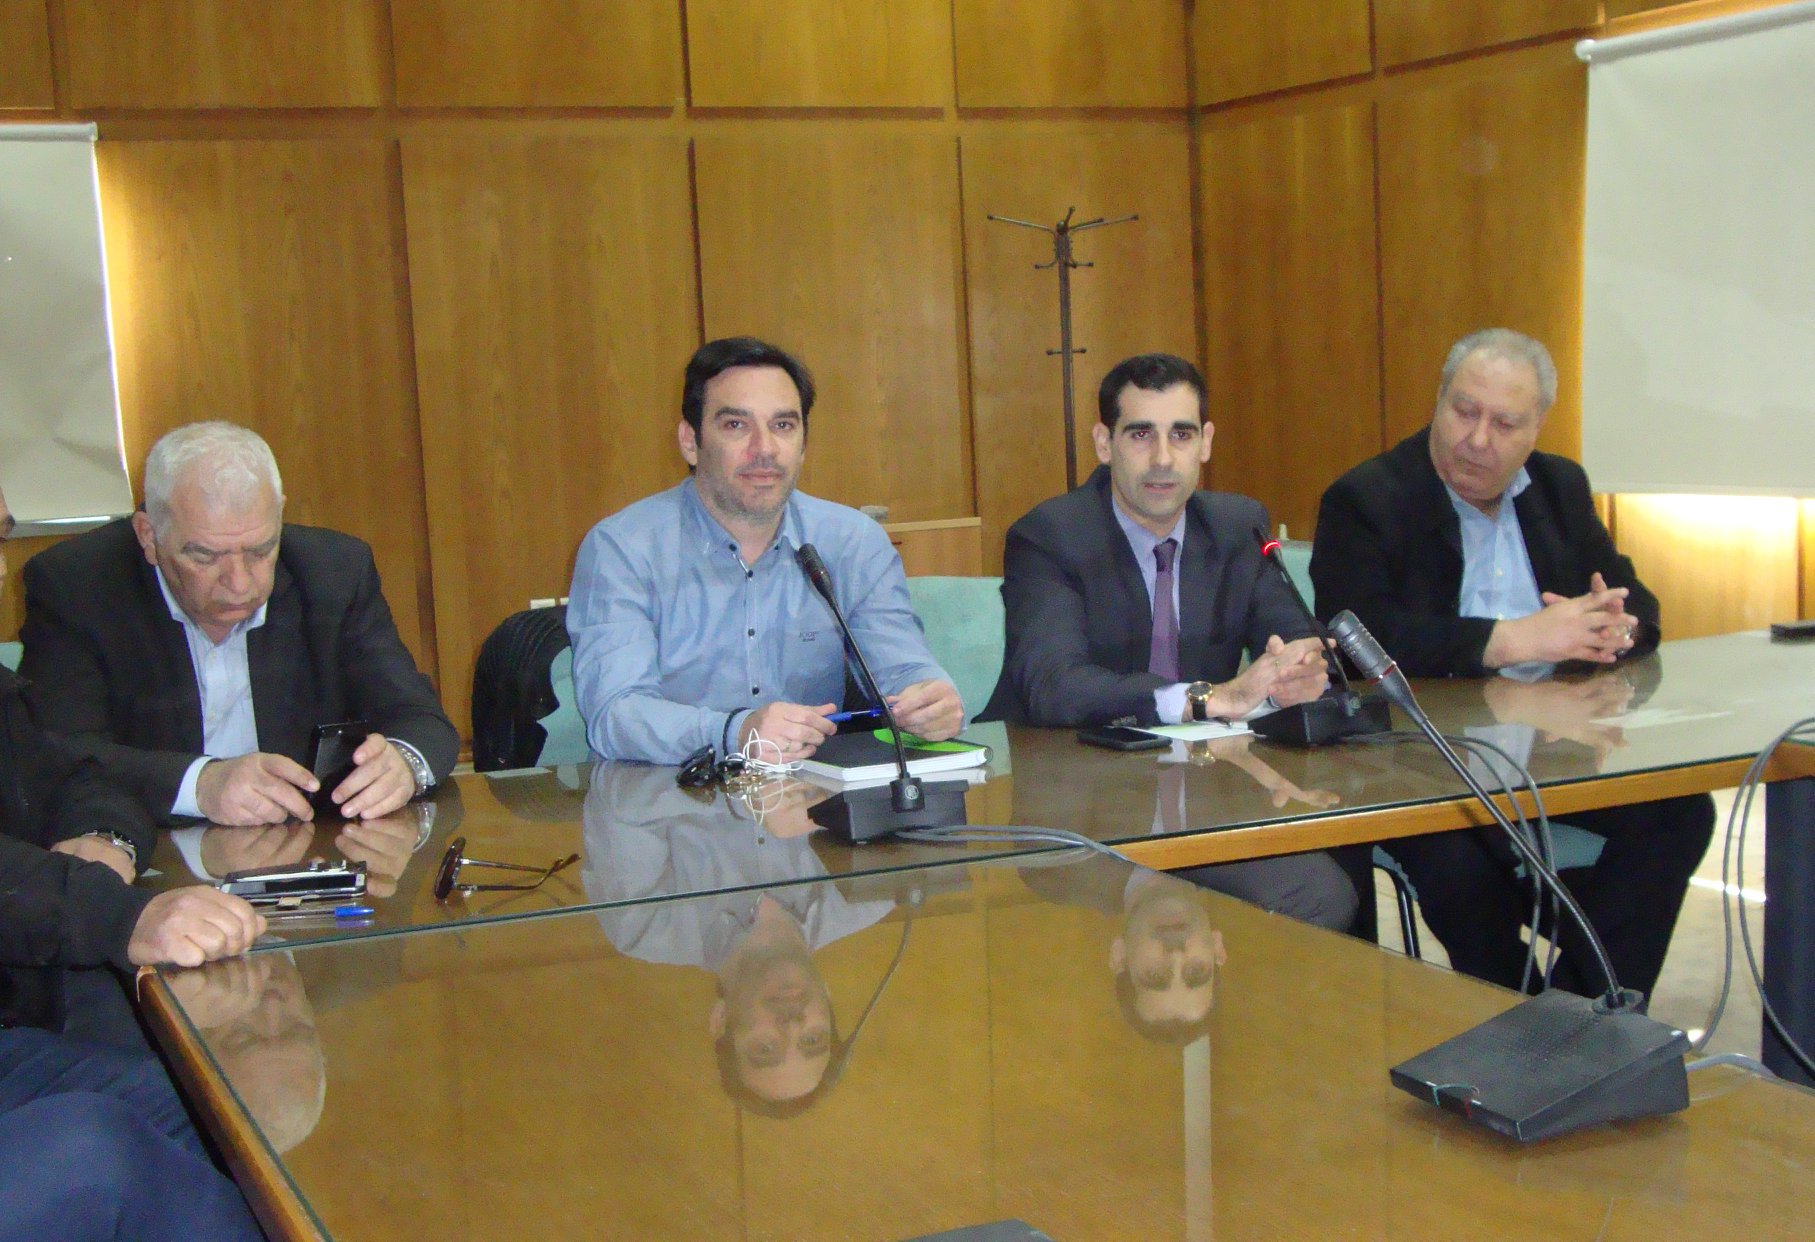 Π.Ε. Ηλείας: Συνάντηση στον Πύργο του Αντι/άρχη Βασίλη Γιαννόπουλου με εκπροσώπους αθλητικών σωματείων του Νομού για την επιβολή μέτρων σε σχέση με τον κορωνοϊο